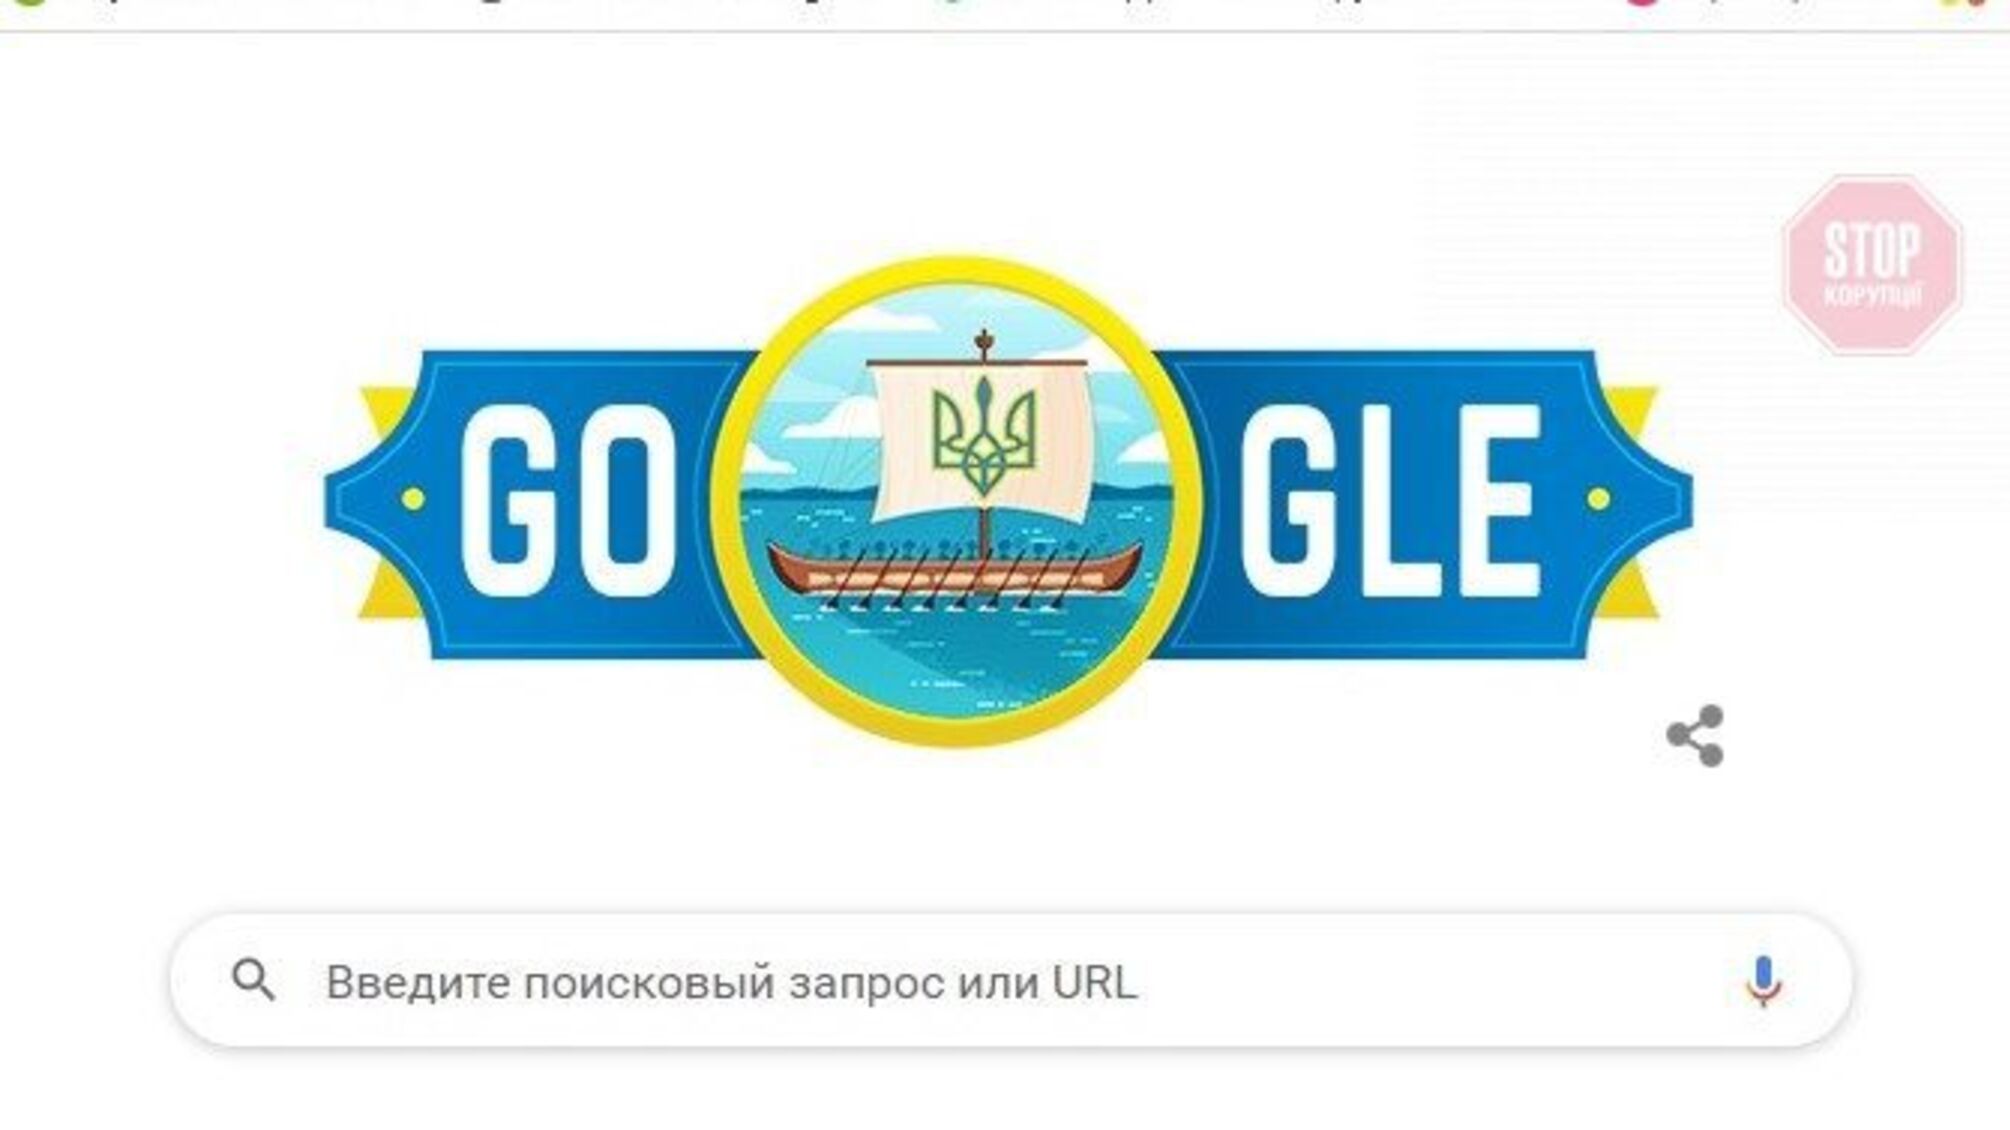 Новий дудл від «Google» із тризубом та Ніагарський водоспад в синьо-жовтих кольорах, - світ вітає Україну